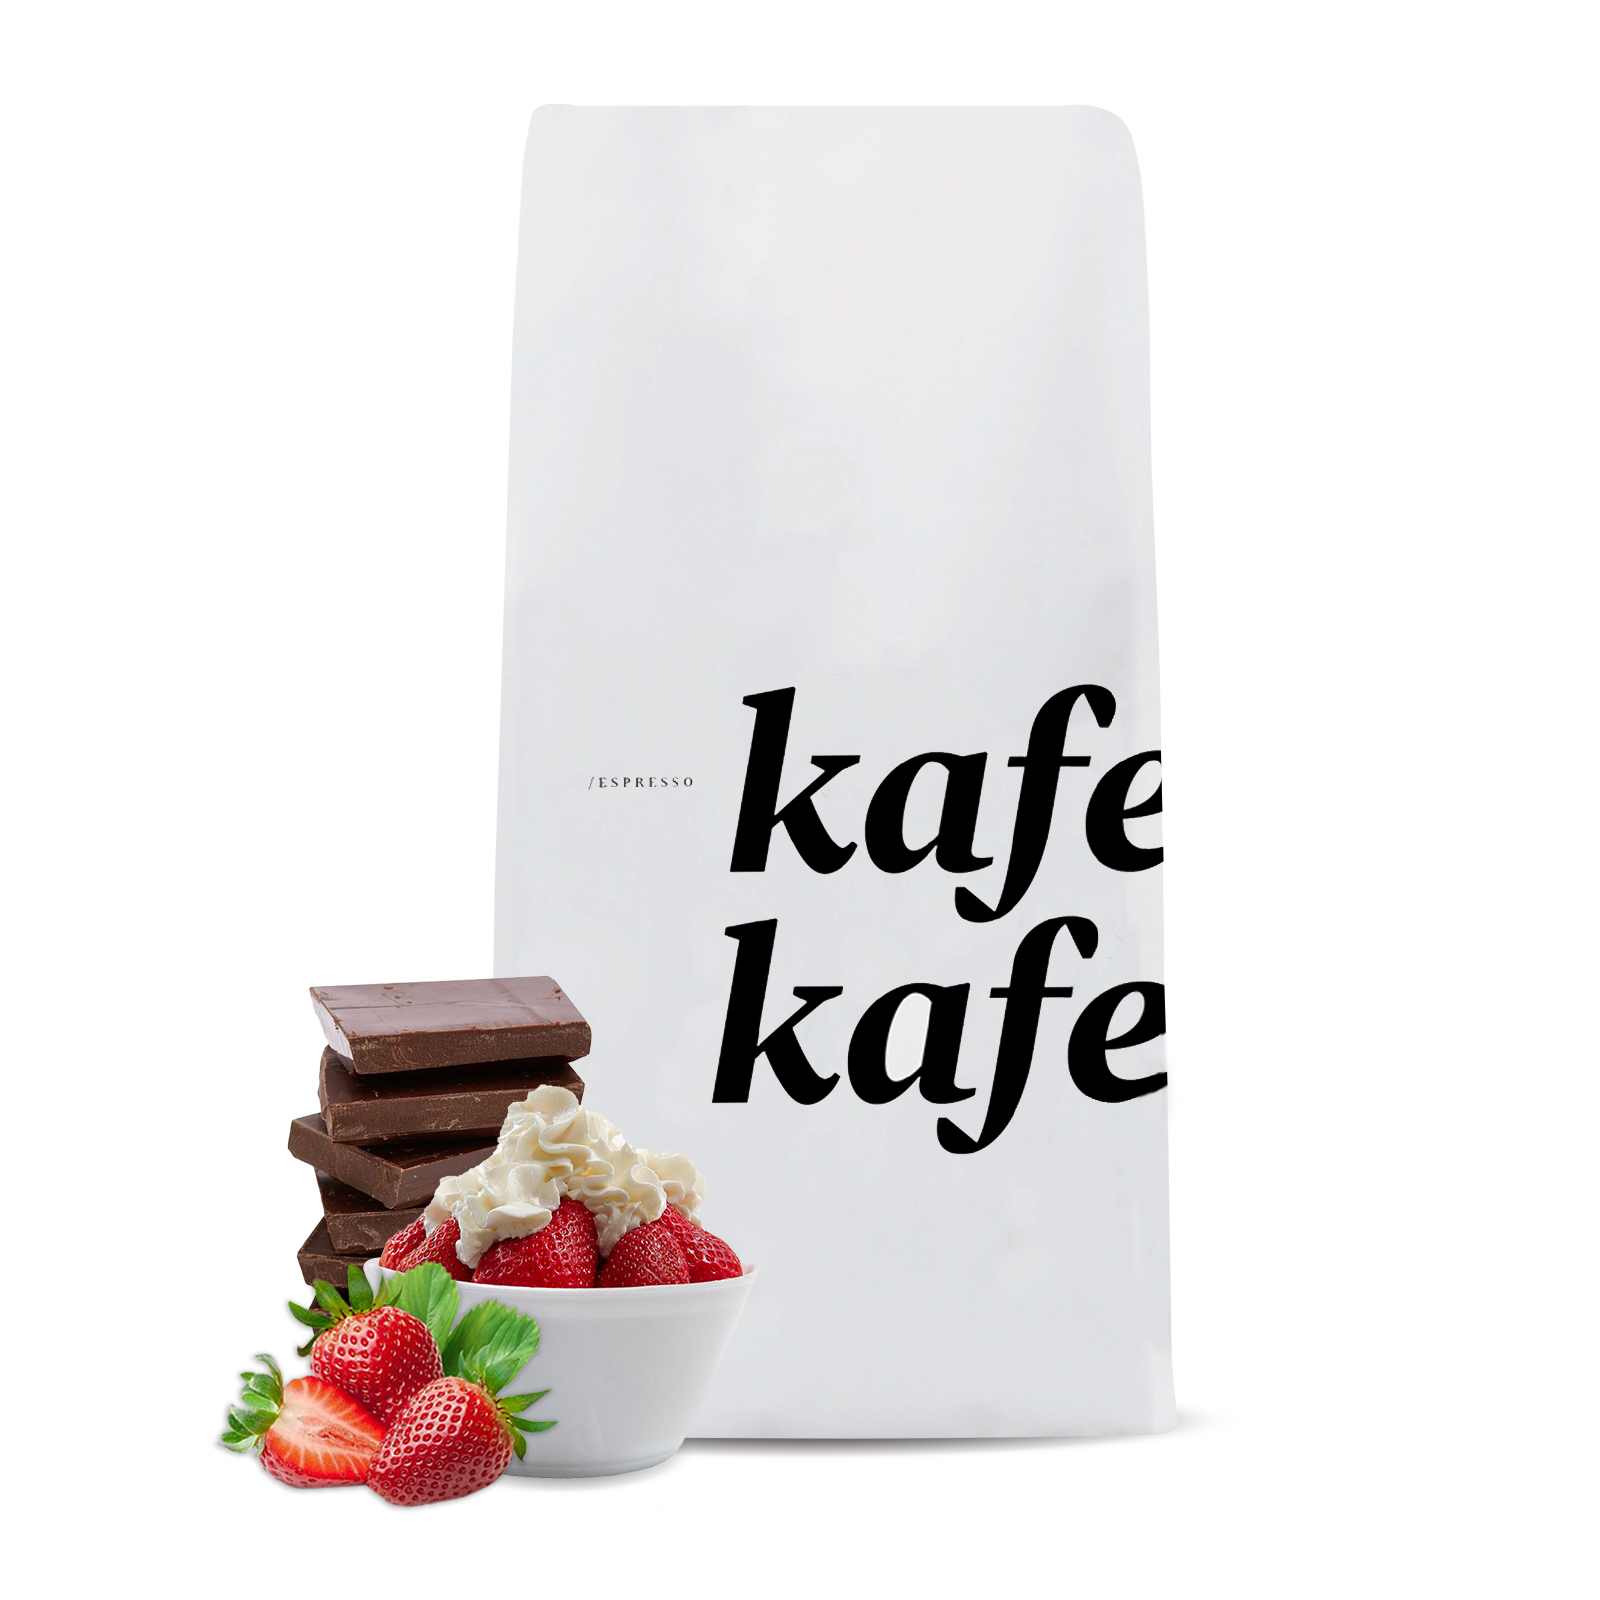 Výběrová káva Kmen Coffee Roasters Etiopie KAFE KAFE - 1000g